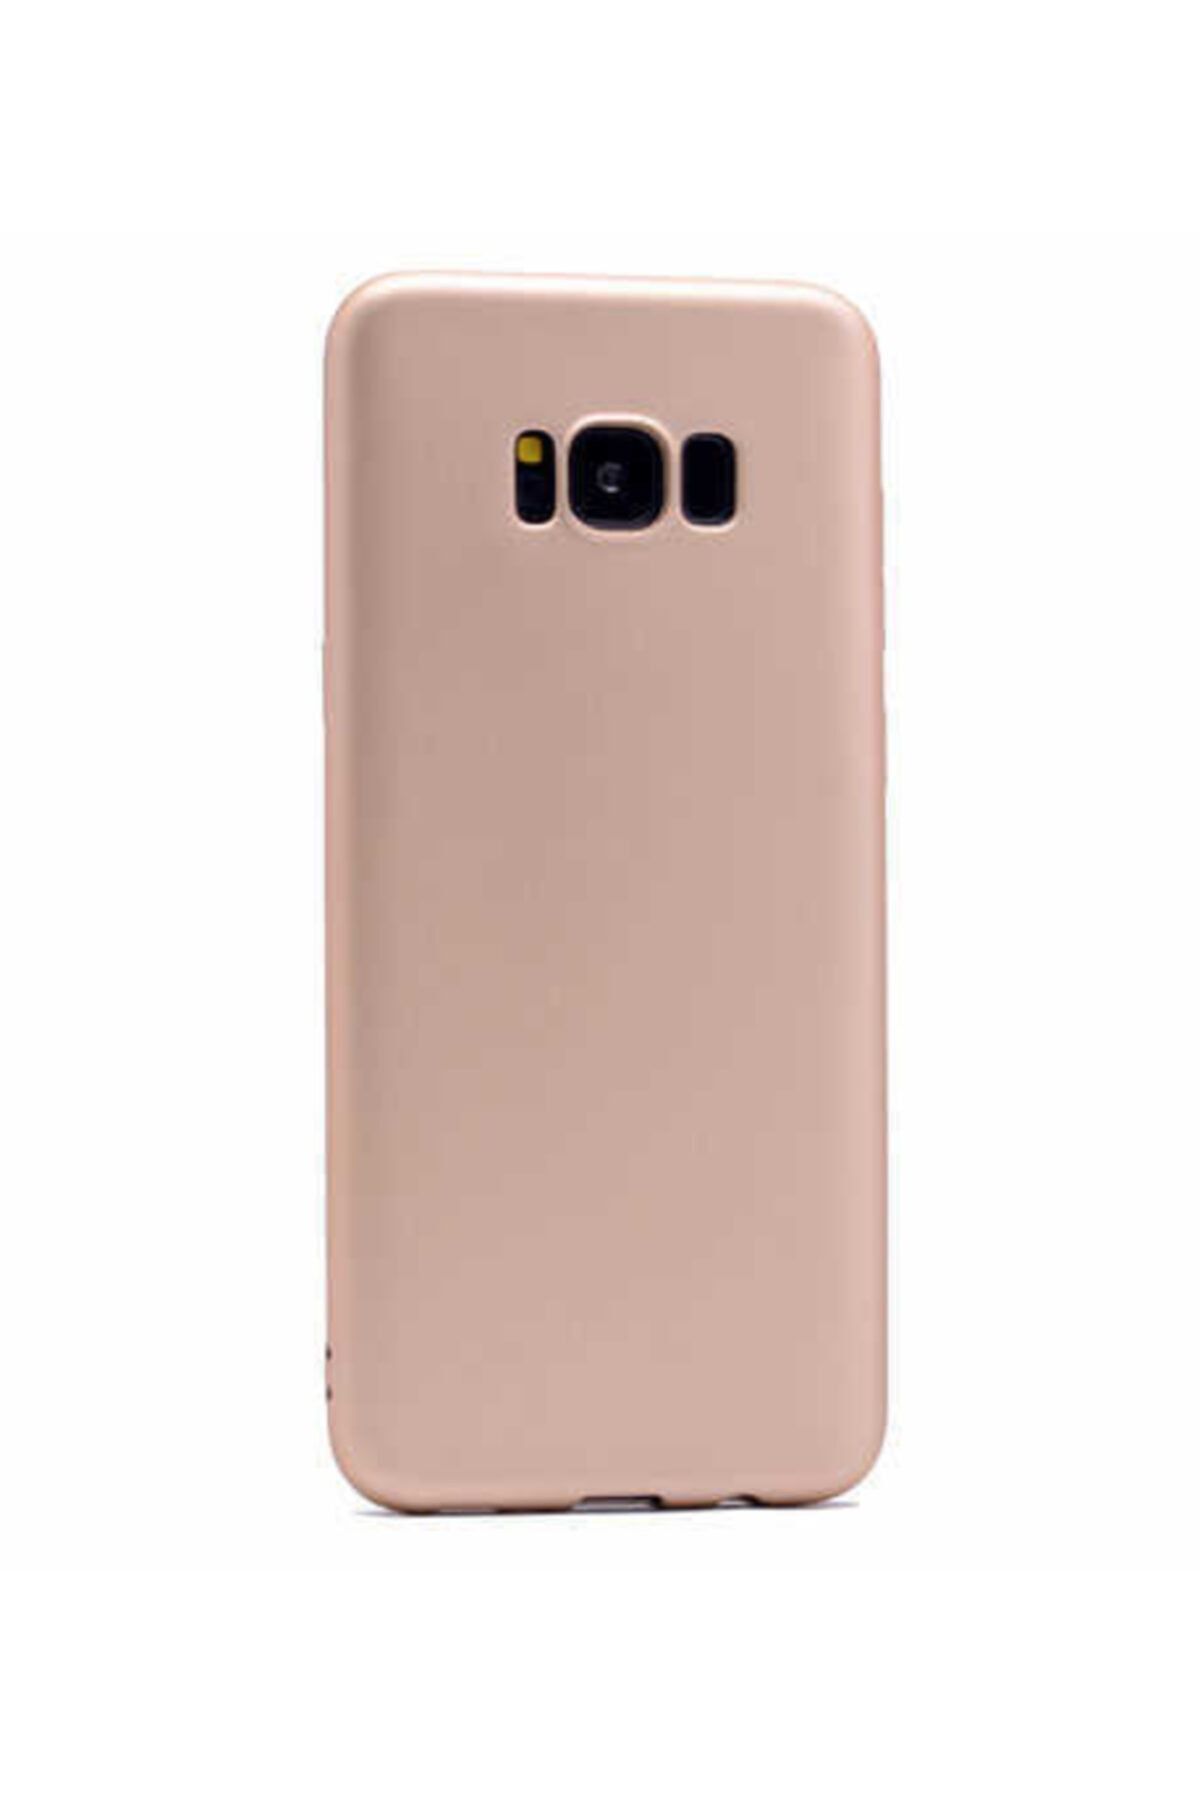 İncisoft Galaxy S8 Uyumlu Ince Yumuşak Soft Tasarım Renkli Silikon Kılıf